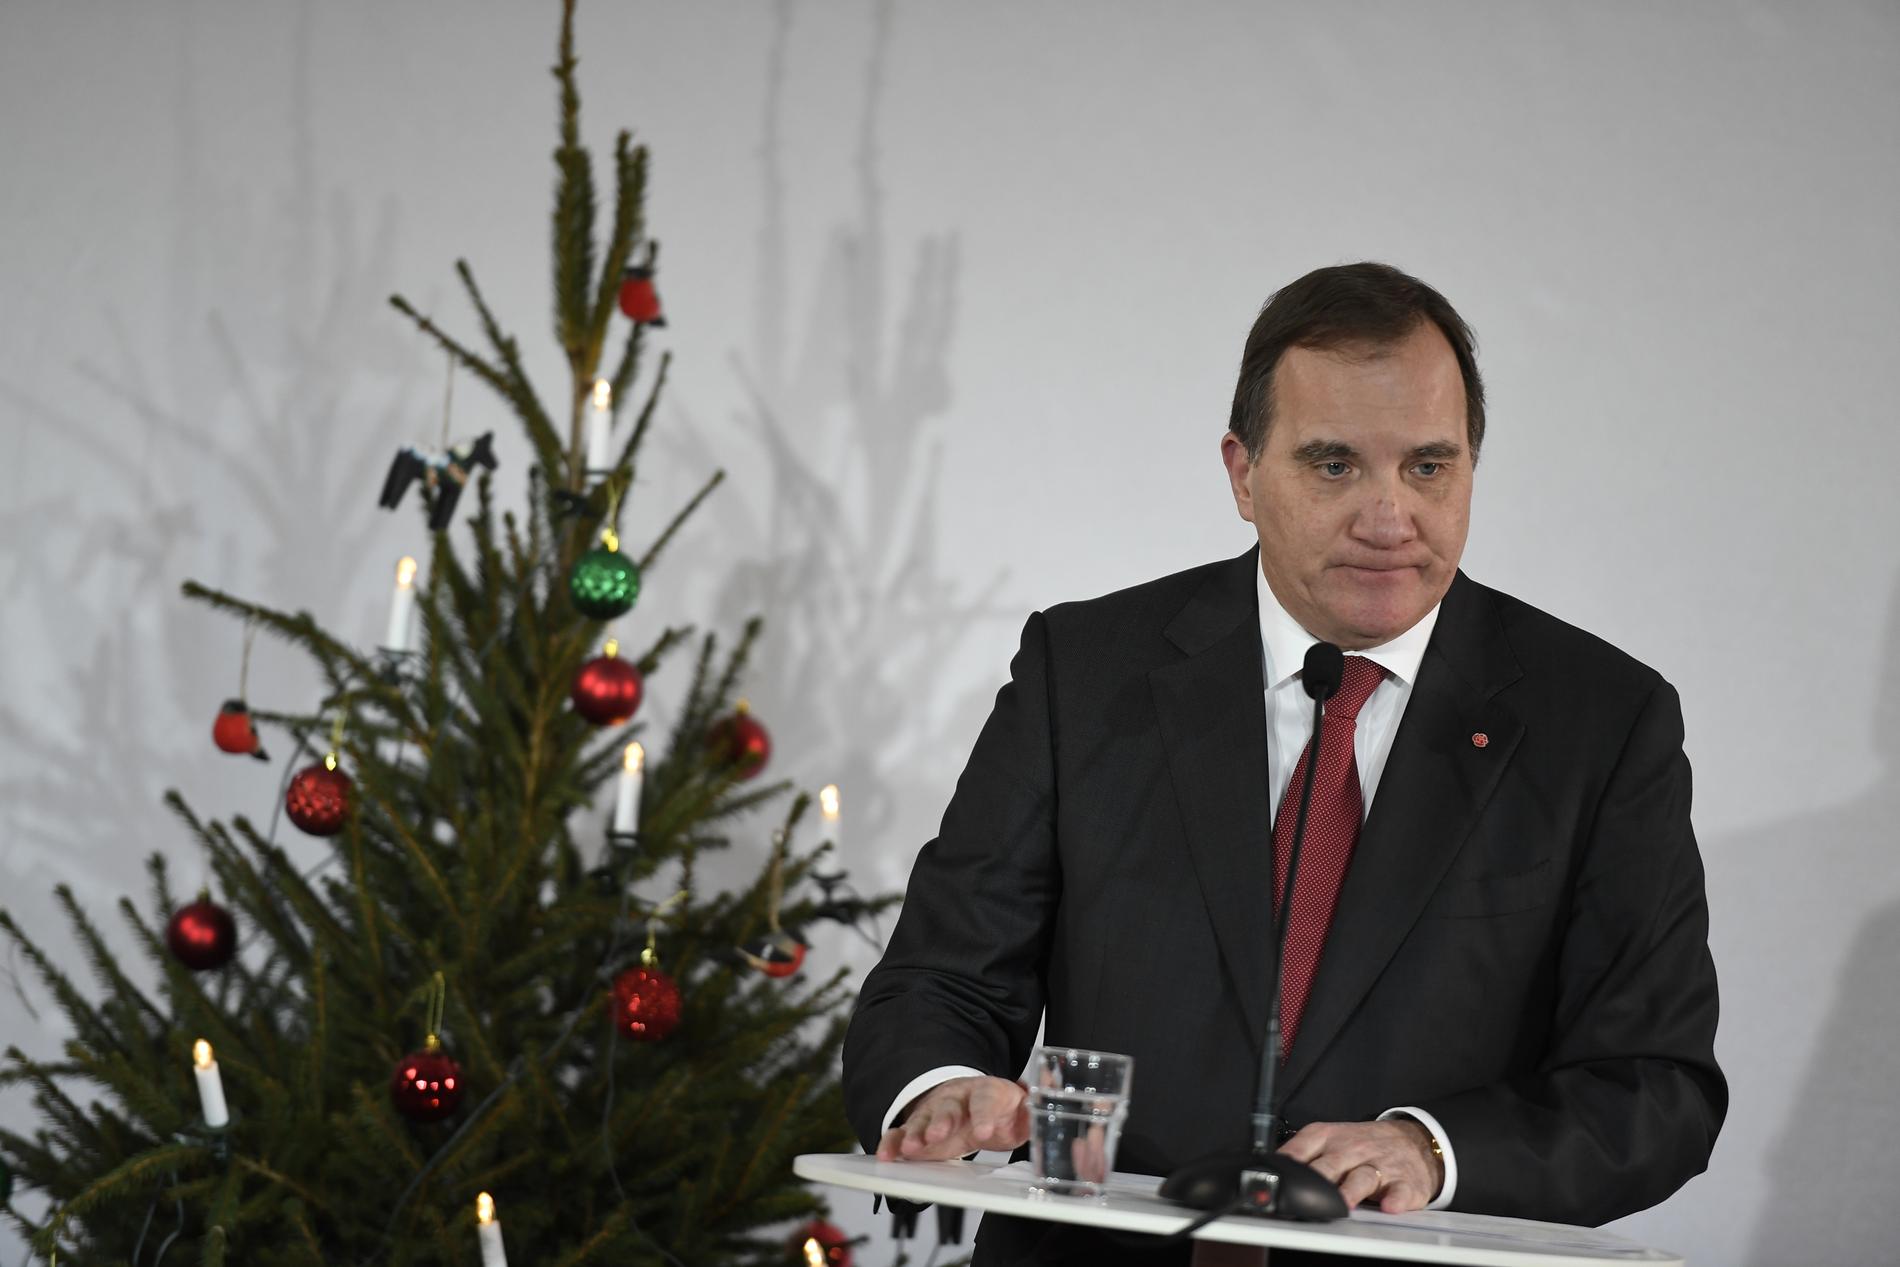 Statsminister Stefan Löfven (S) vid en pressträff före sitt tal i Avesta under söndagen.